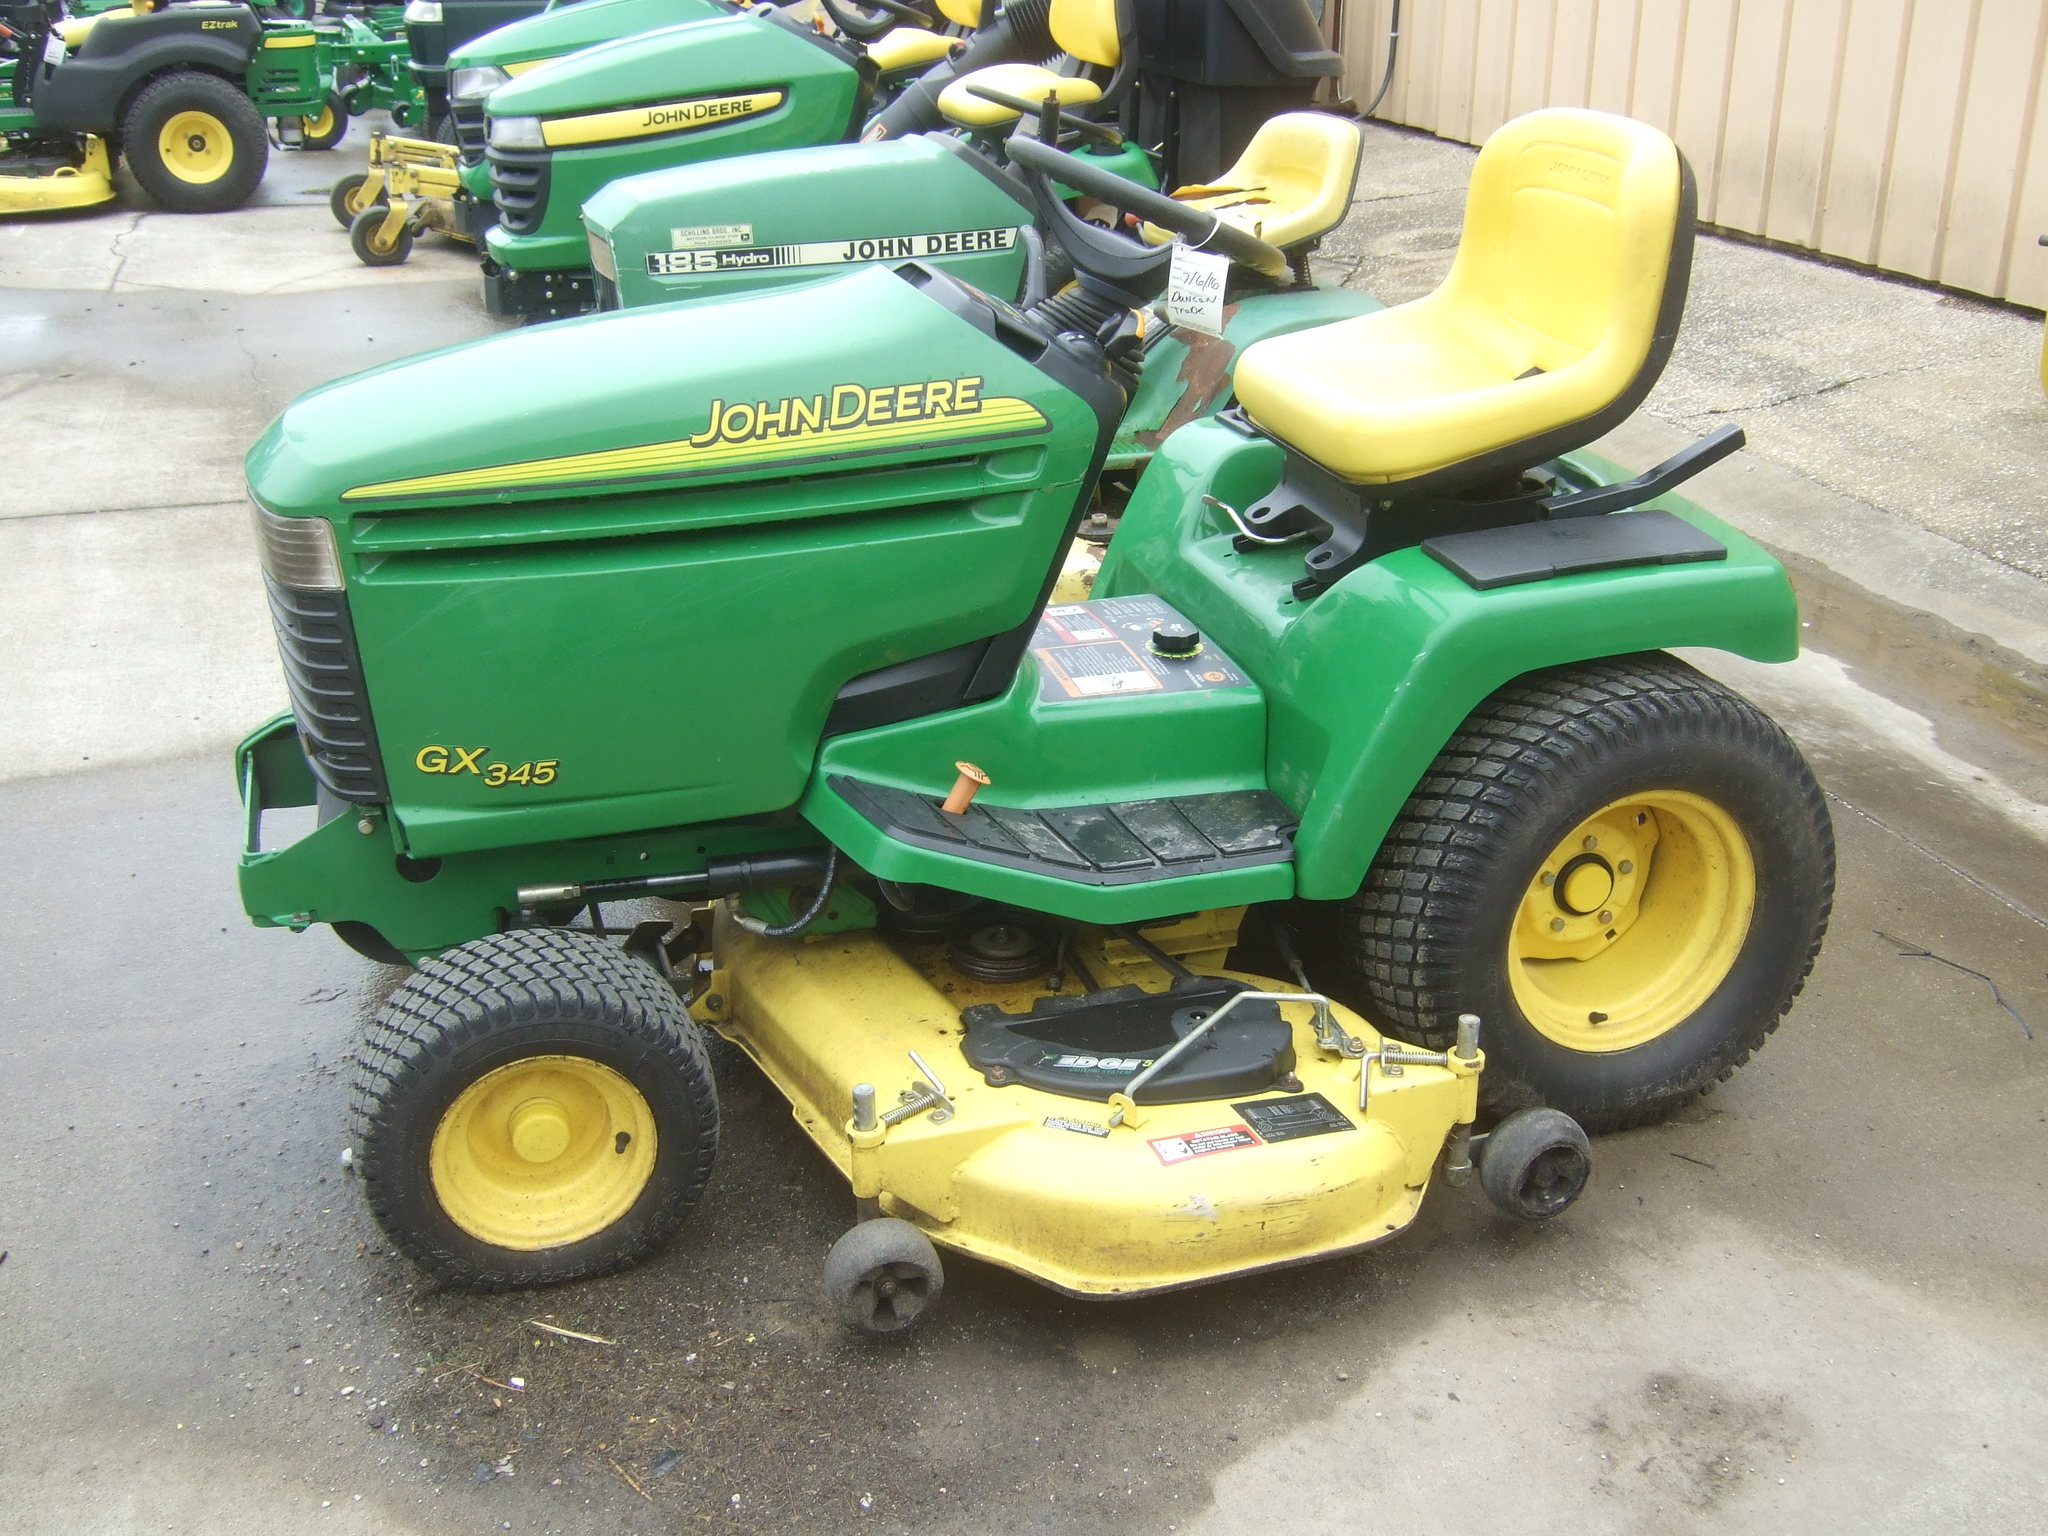 John Deere GX345 Lawn & Garden Tractors for Sale | [61094]